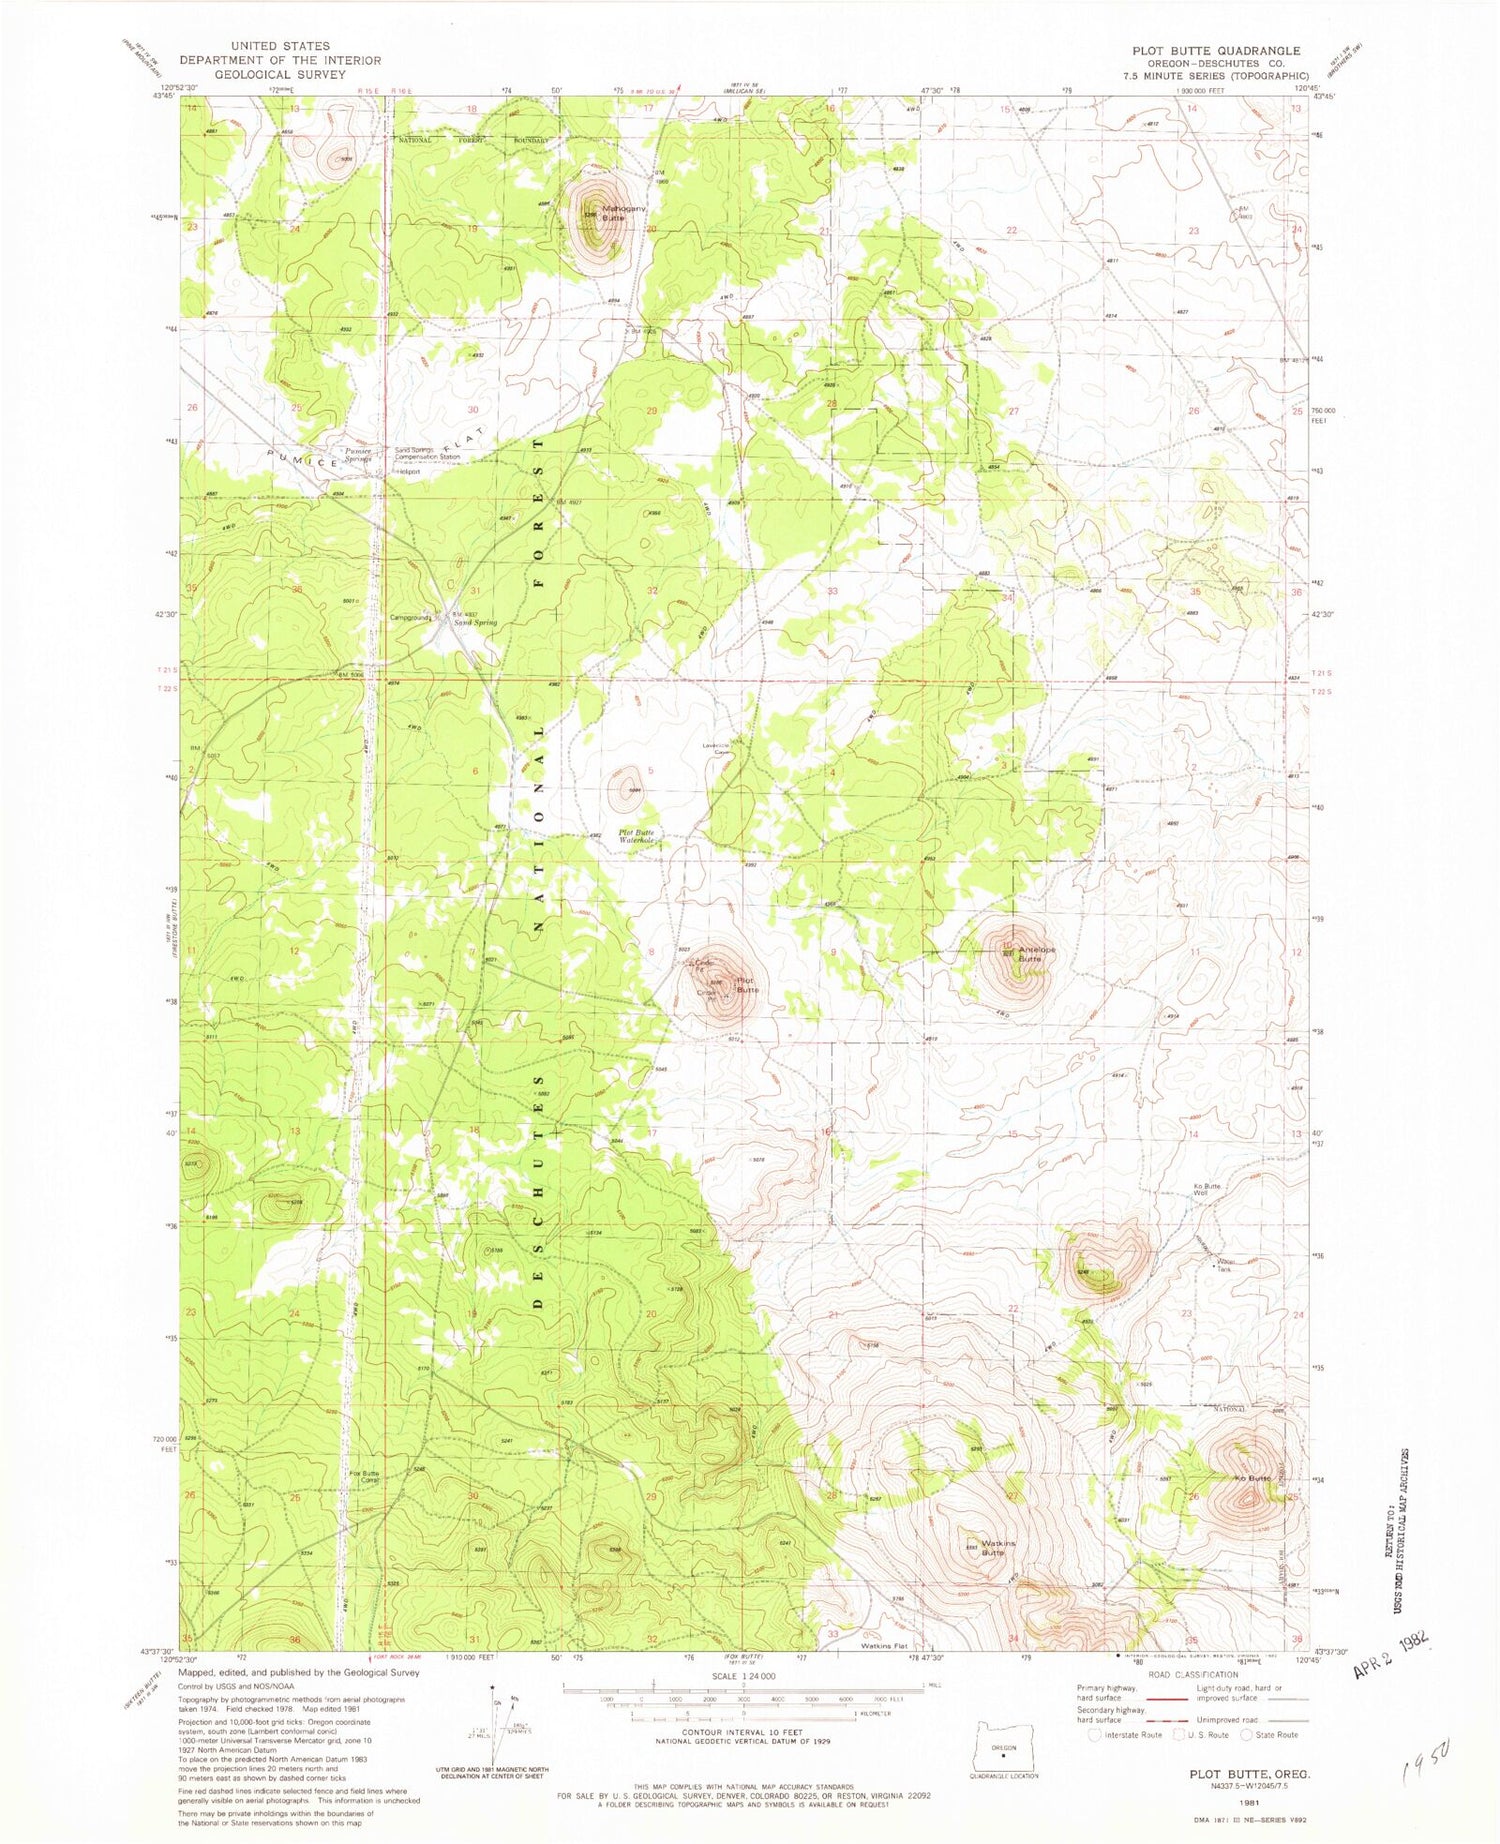 Classic USGS Plot Butte Oregon 7.5'x7.5' Topo Map Image